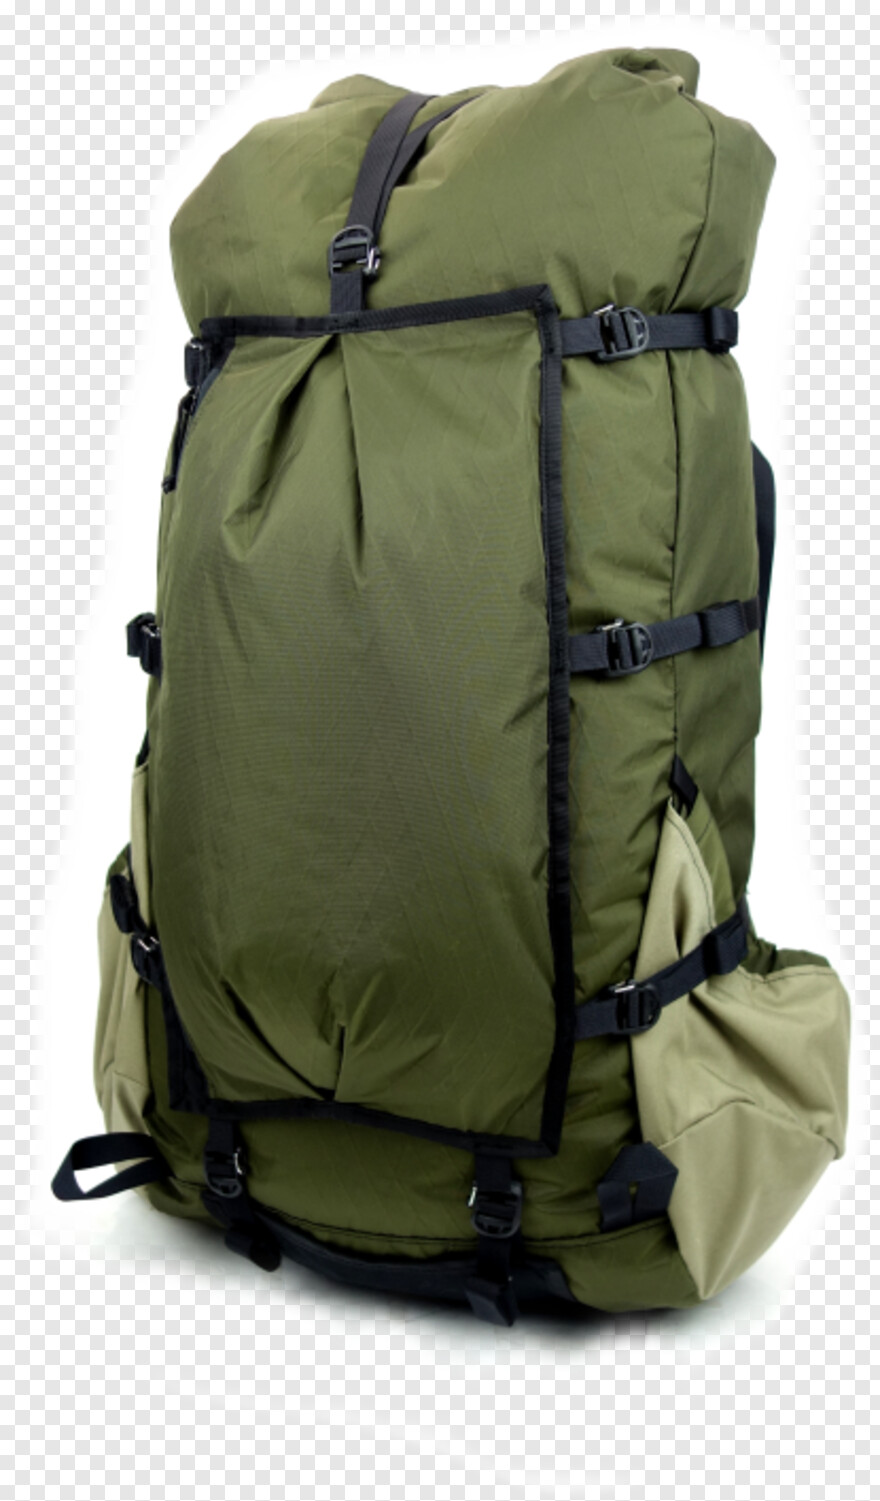 backpack # 426567